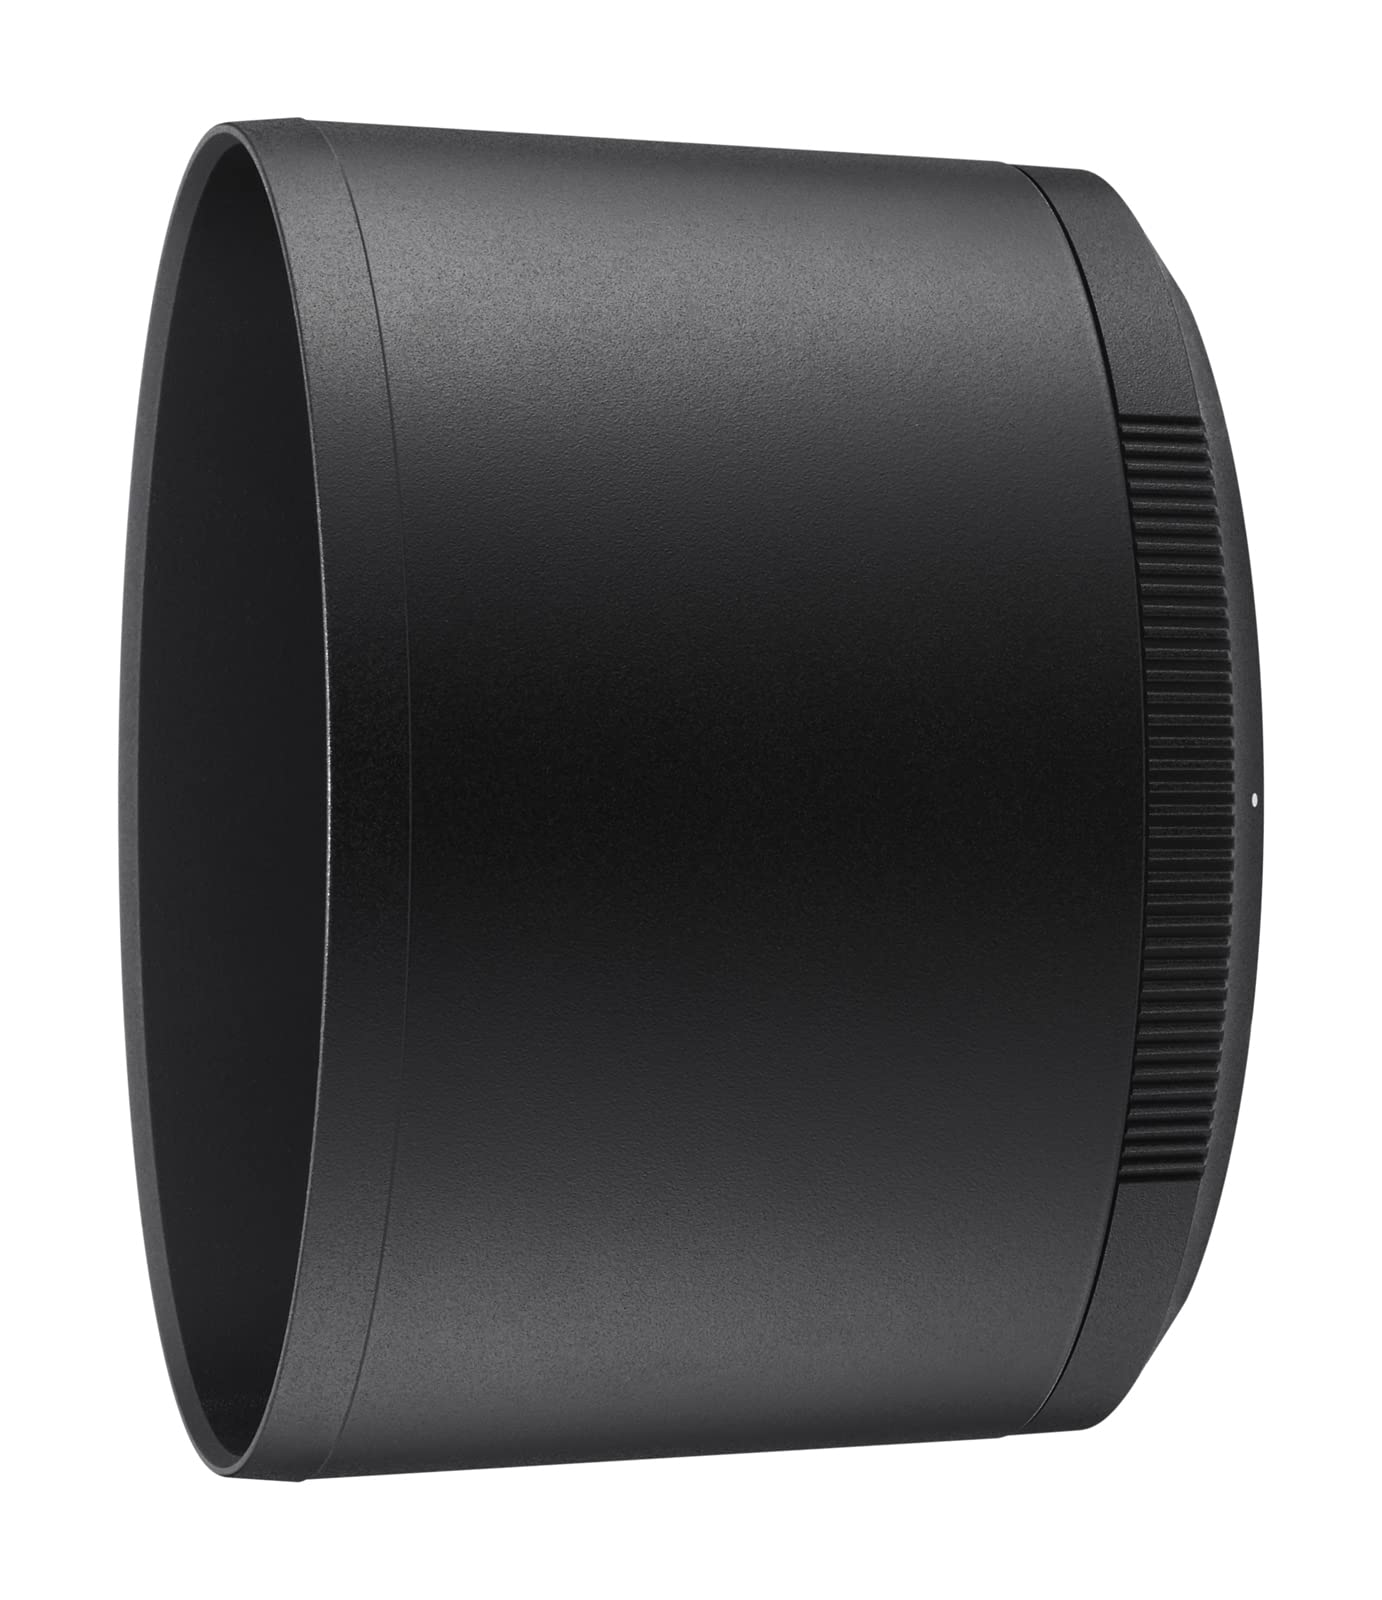 Nikon NIKKOR Z MC 105mm f/2.8 VR S | Professional macro prime lens for Z series mirrorless cameras | Nikon USA Model